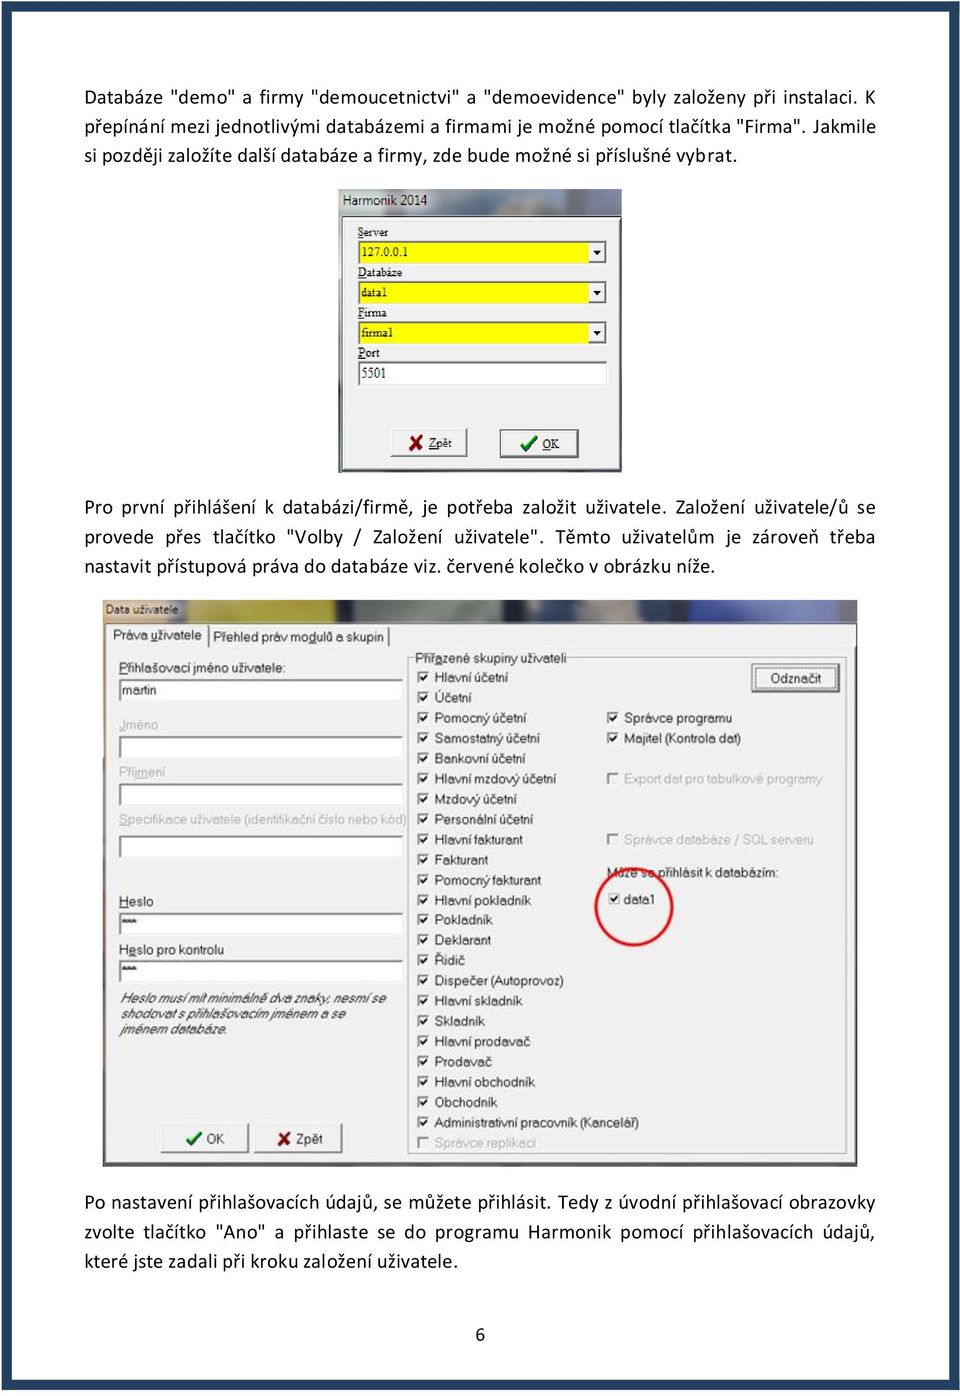 Založení uživatele/ů se provede přes tlačítko "Volby / Založení uživatele". Těmto uživatelům je zároveň třeba nastavit přístupová práva do databáze viz. červené kolečko v obrázku níže.